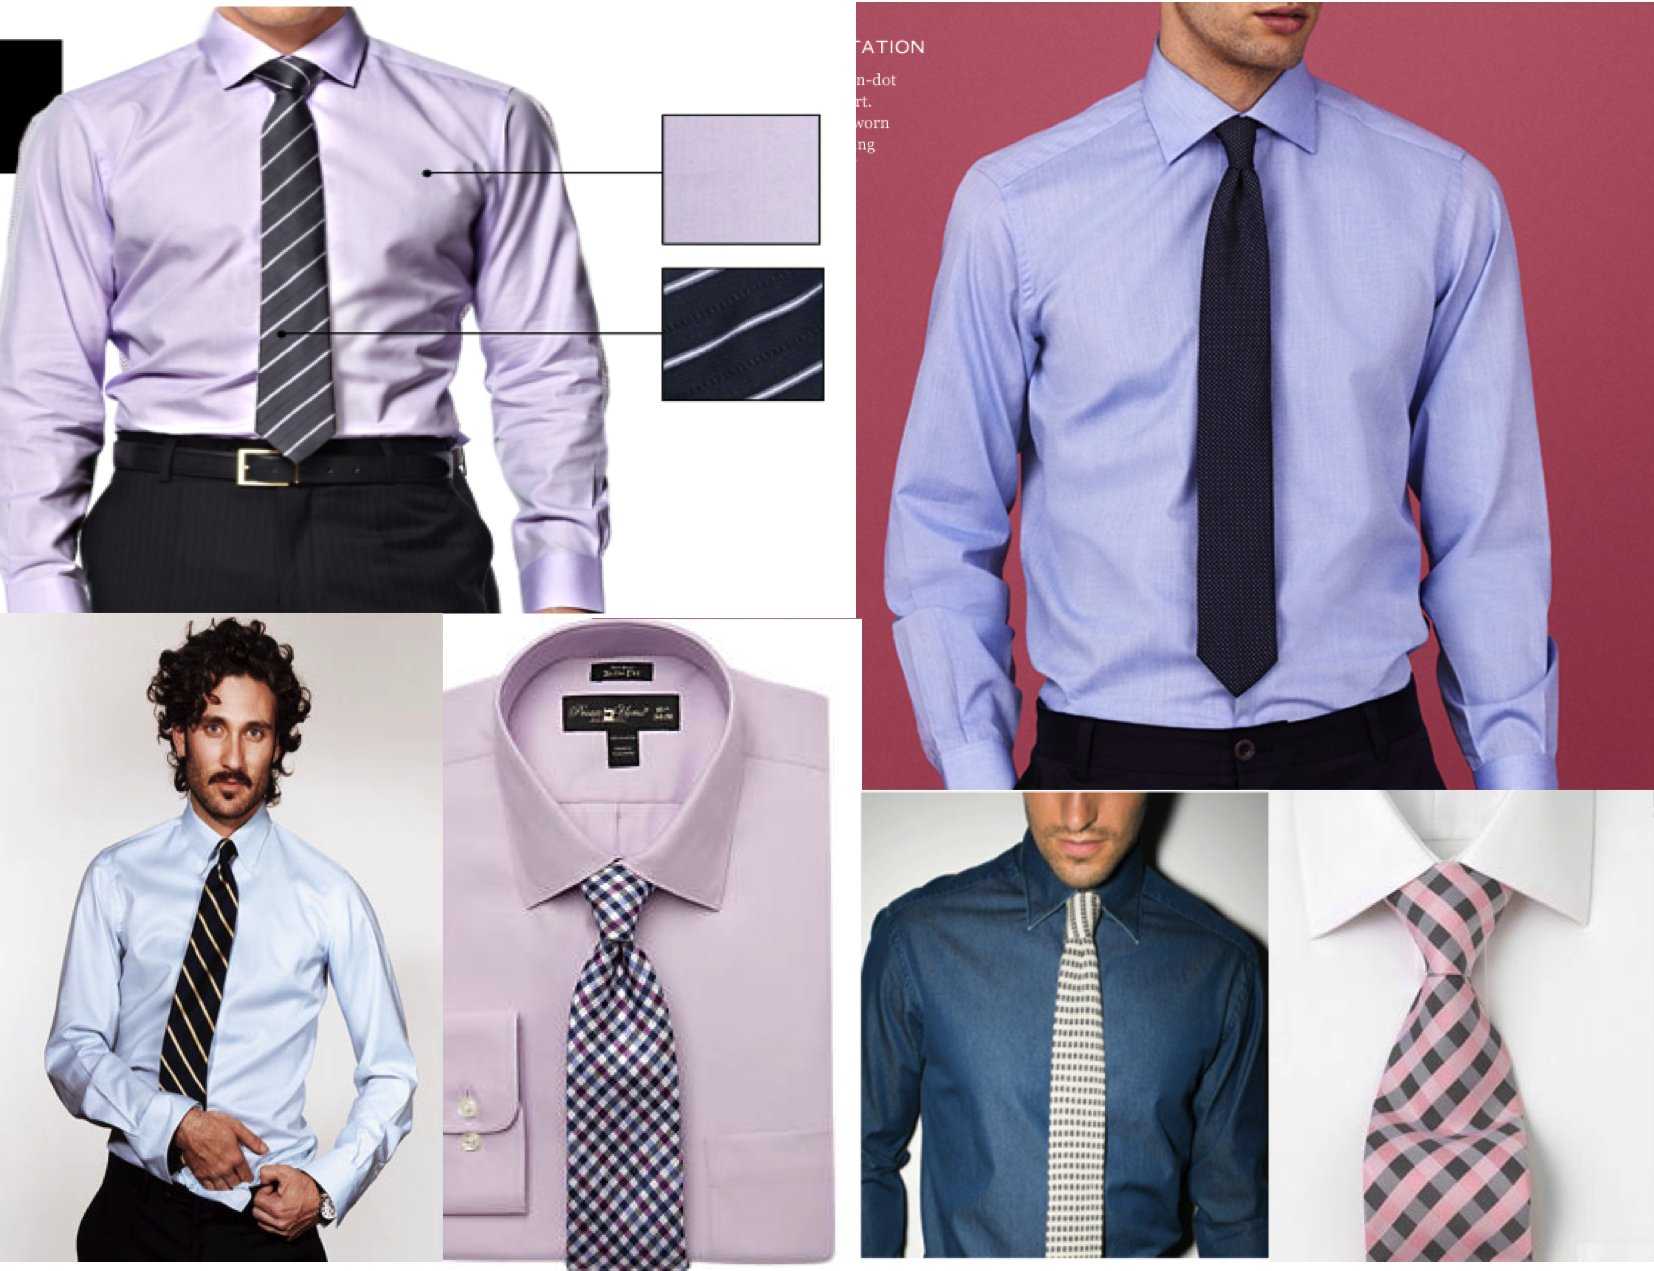 Самые красивые узлы для галстука. современный галстук, схемы завязывания узлов.. подборка эффектных способом завязать мужской галстук